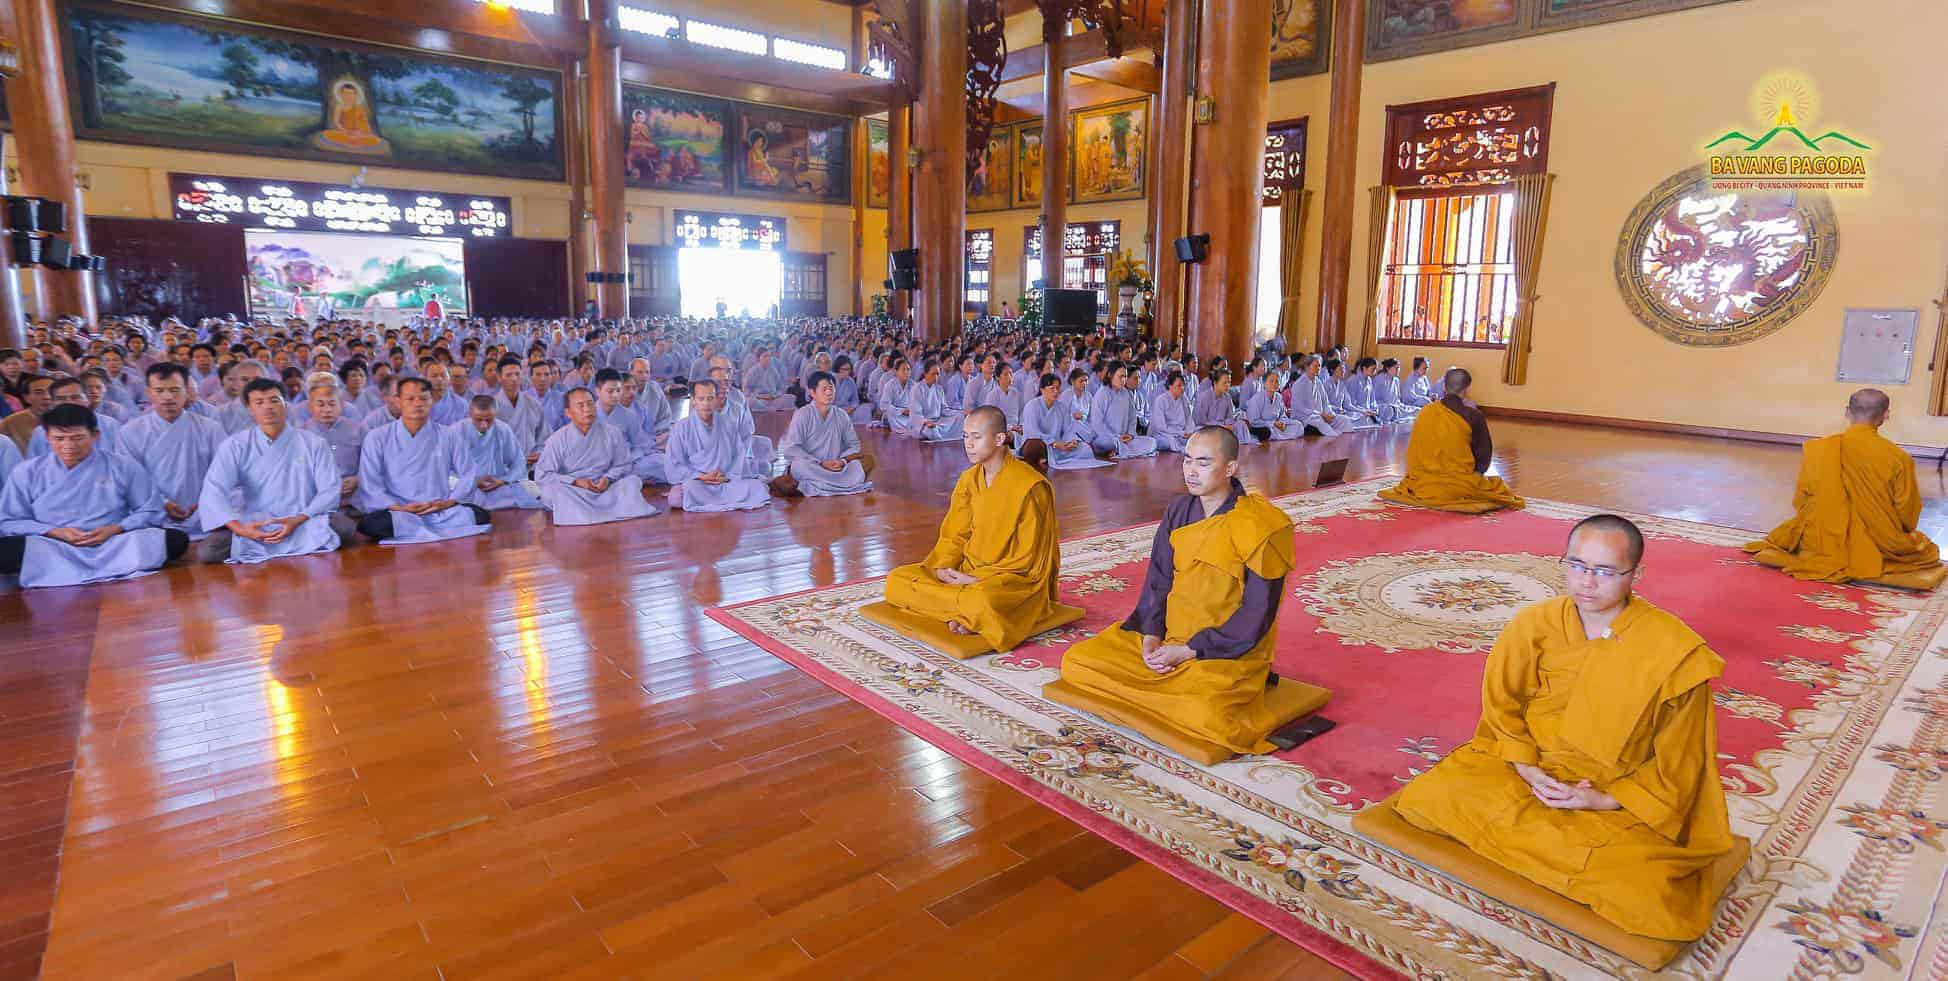 Commemorating Patriarch's Merit through a meditation session at Ba Vang Pagoda